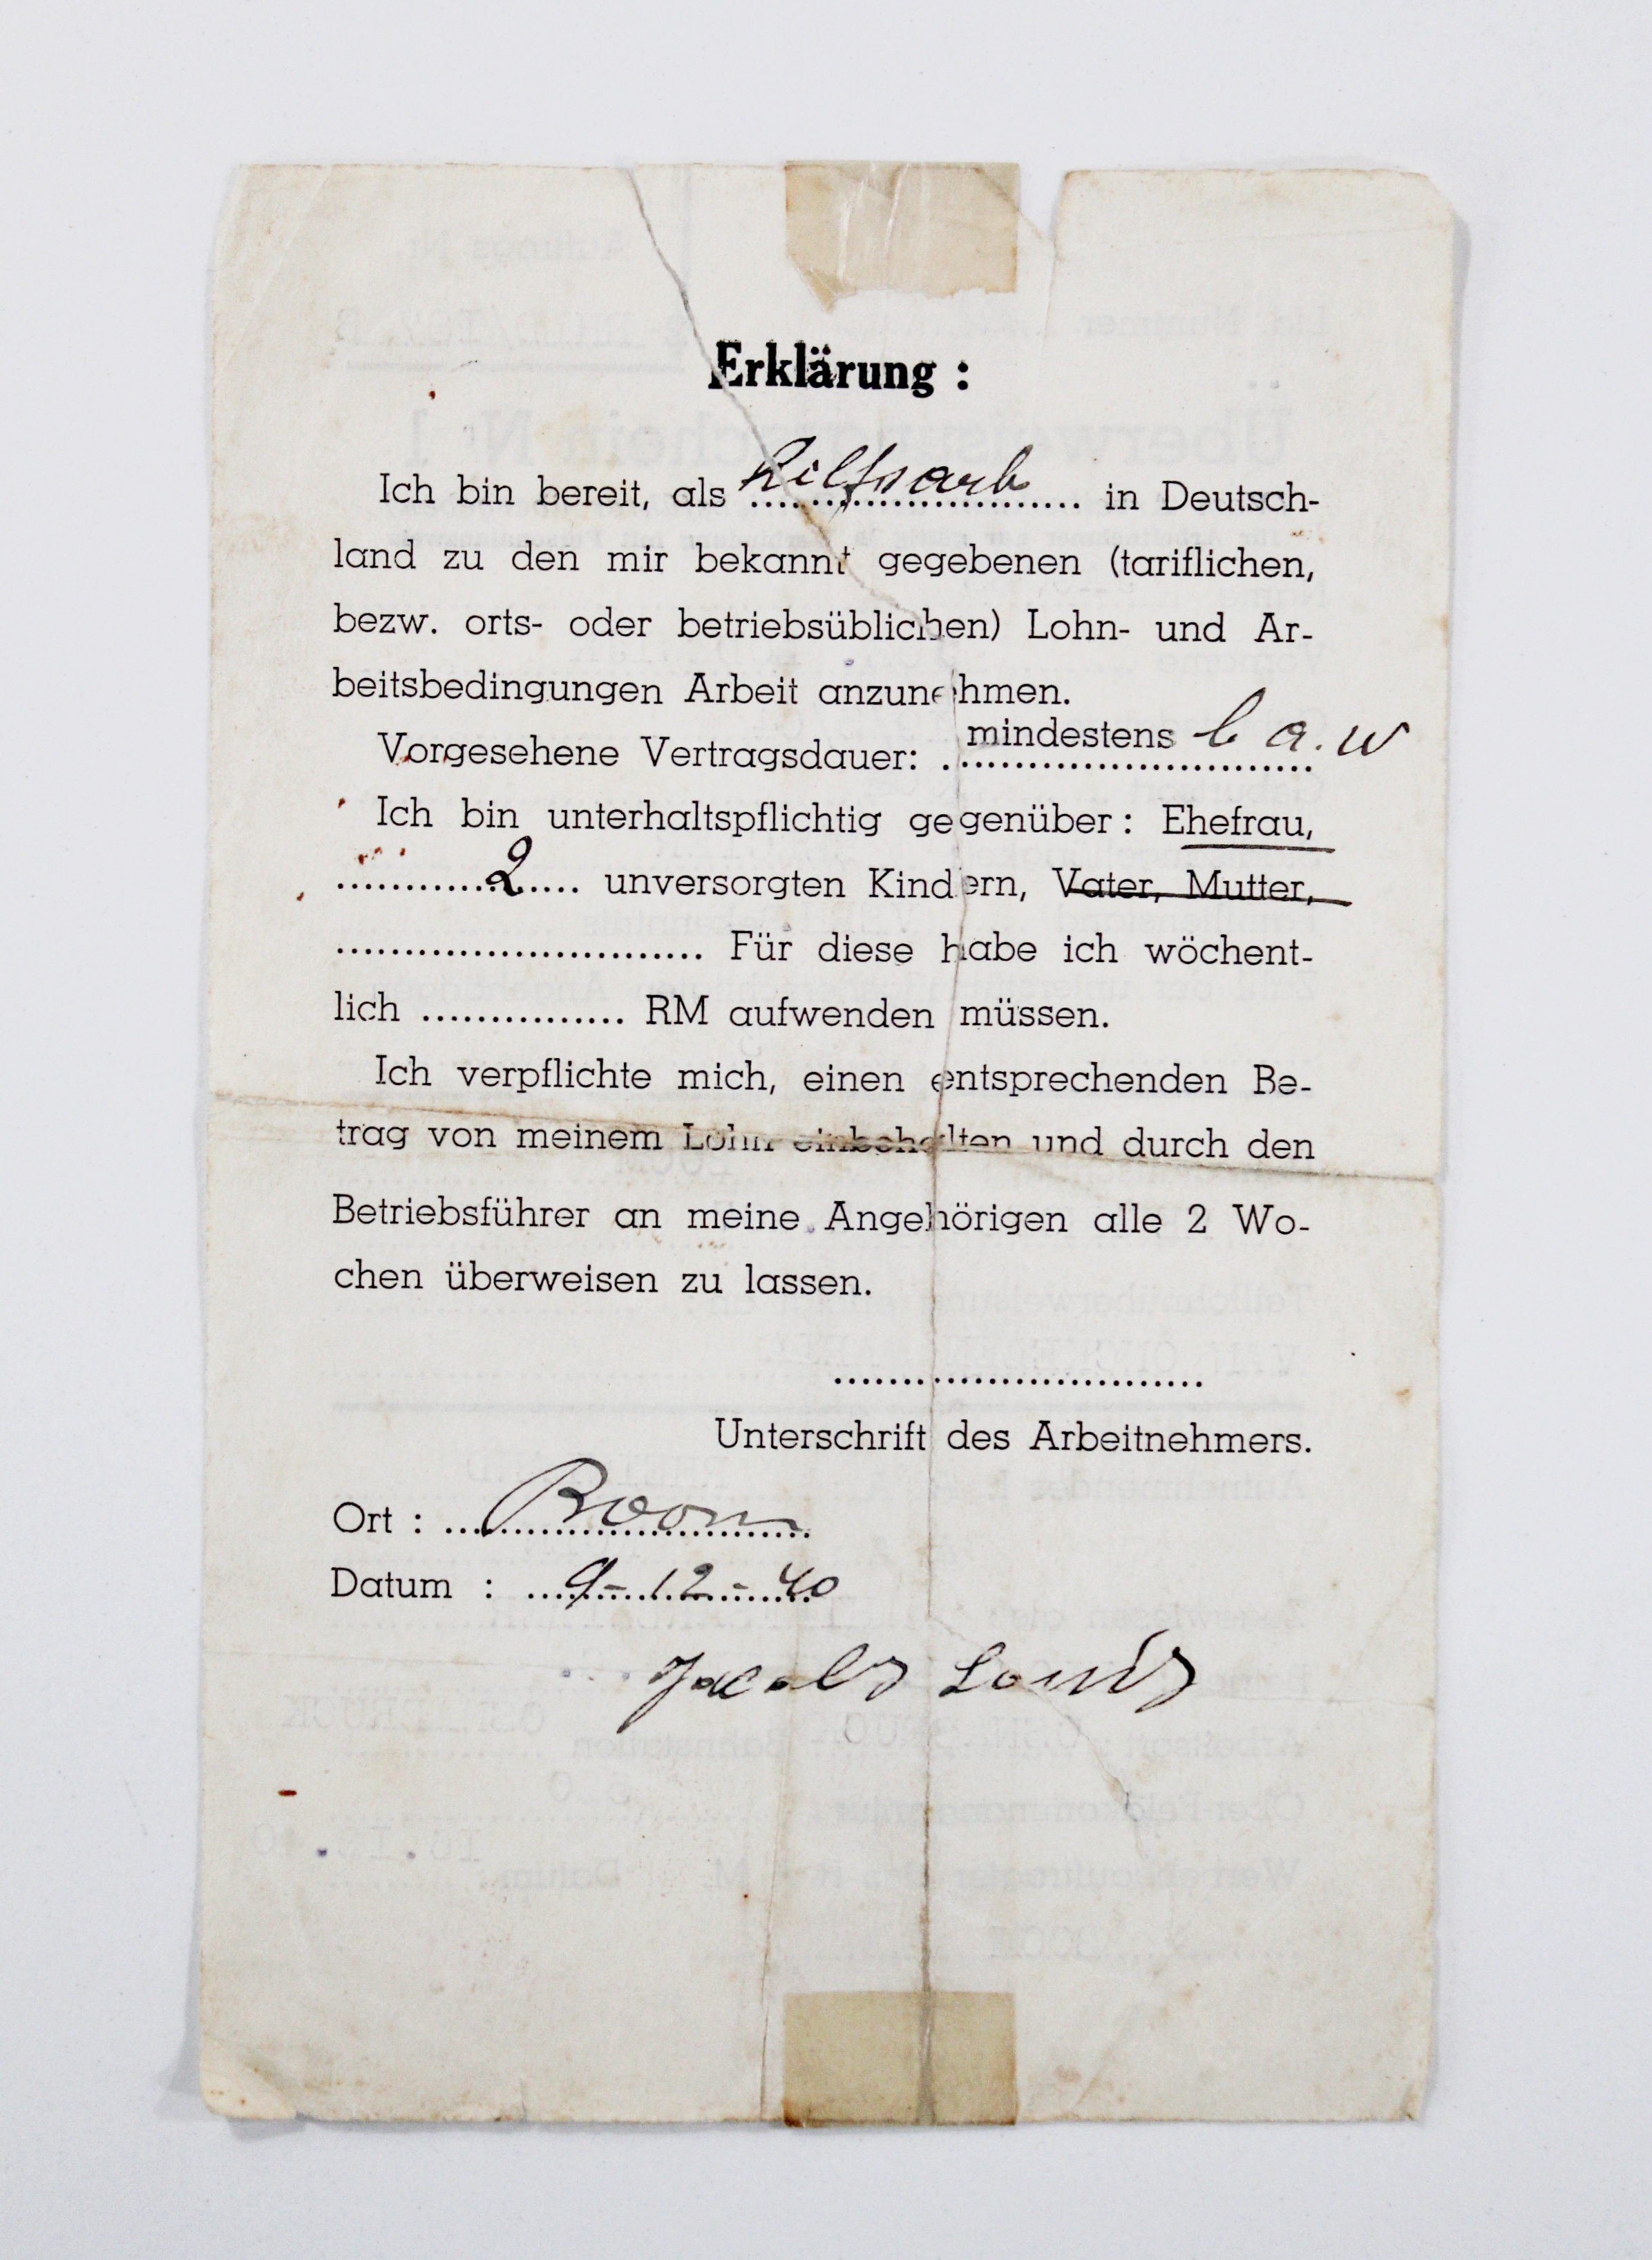 Verklaring van vrijwillige arbeidsinzet in Duitsland van 9 december 1940